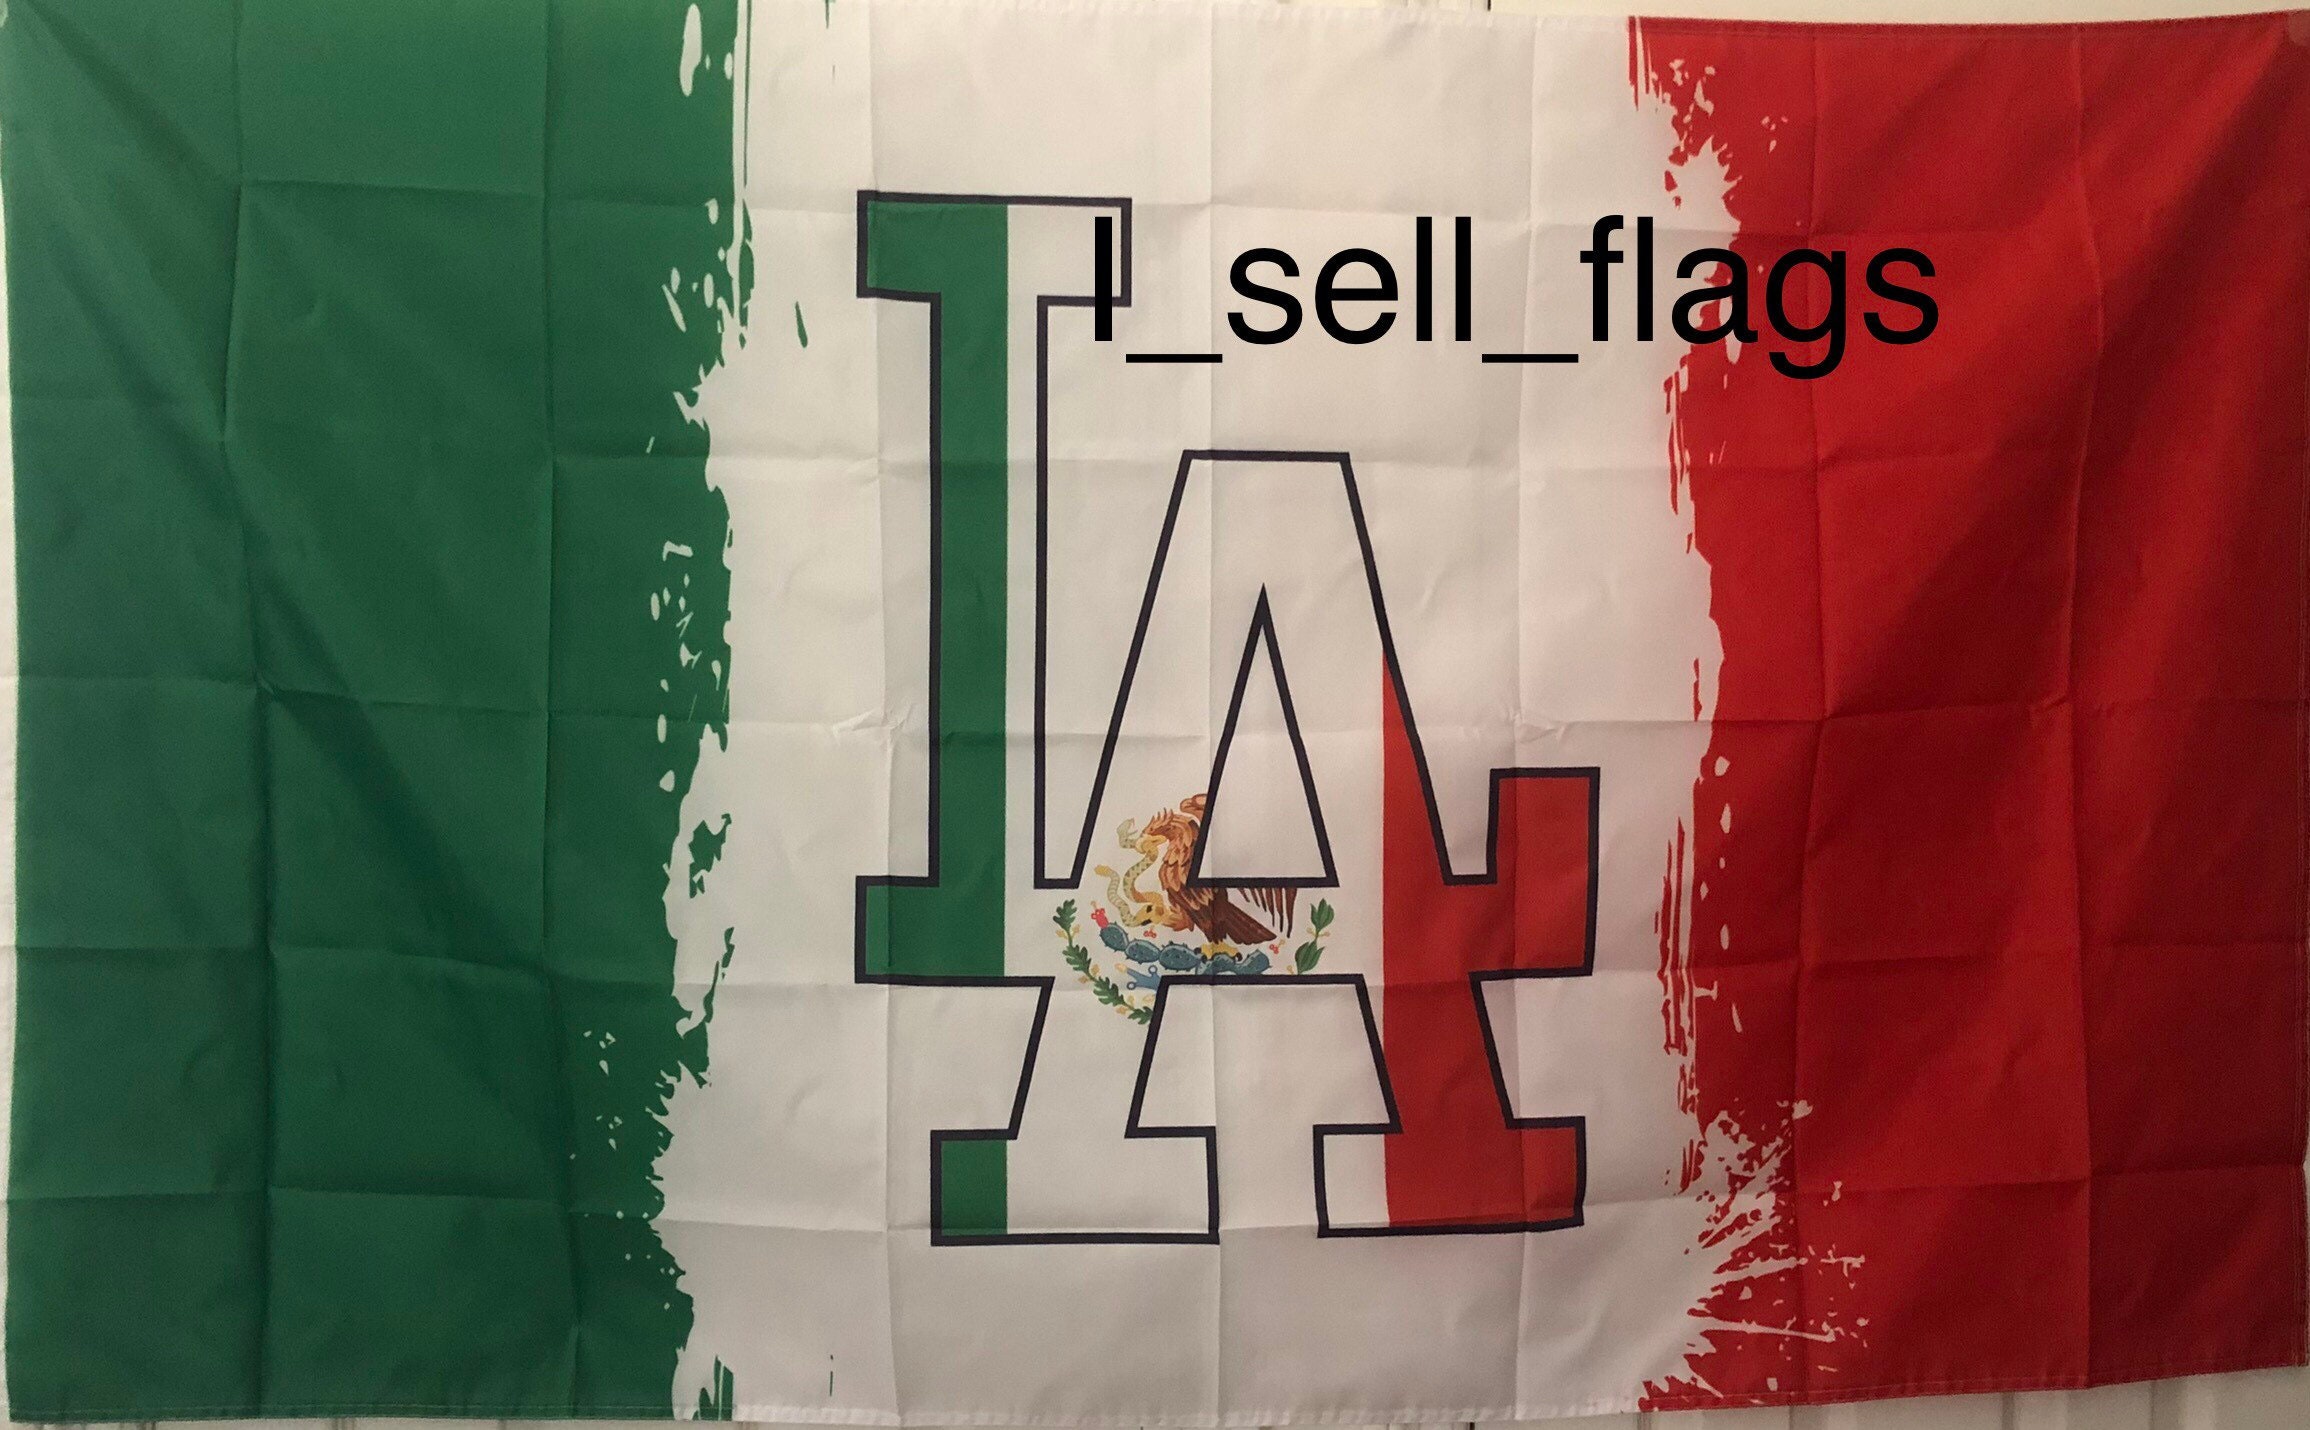 dodgers mexican flag wallpaper